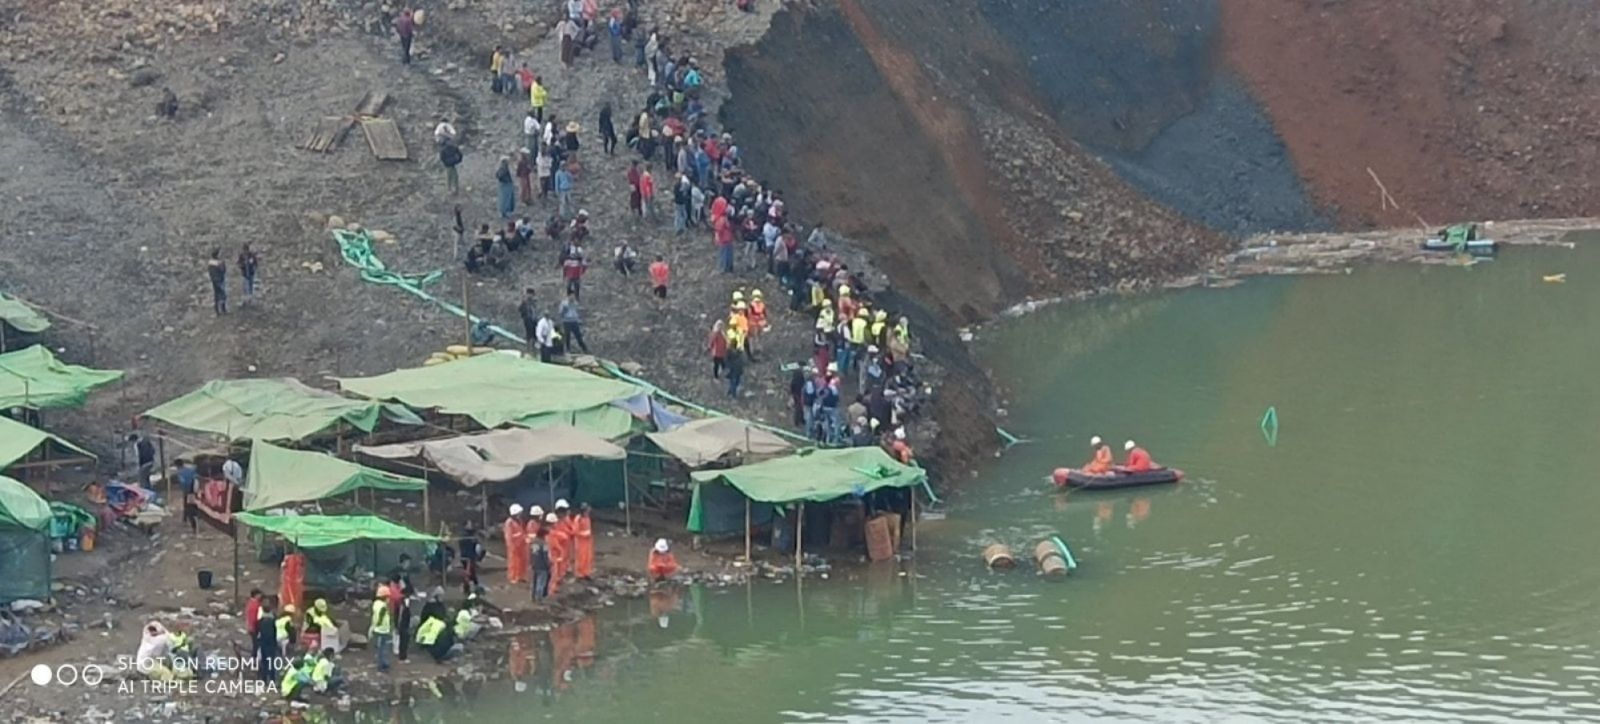 Hoạt động cứu hộ sau trận lở đất tại một mỏ ngọc bích ở khu vực Hpakant thuộc bang Kachin, Myanmar vào ngày 22/12/2021